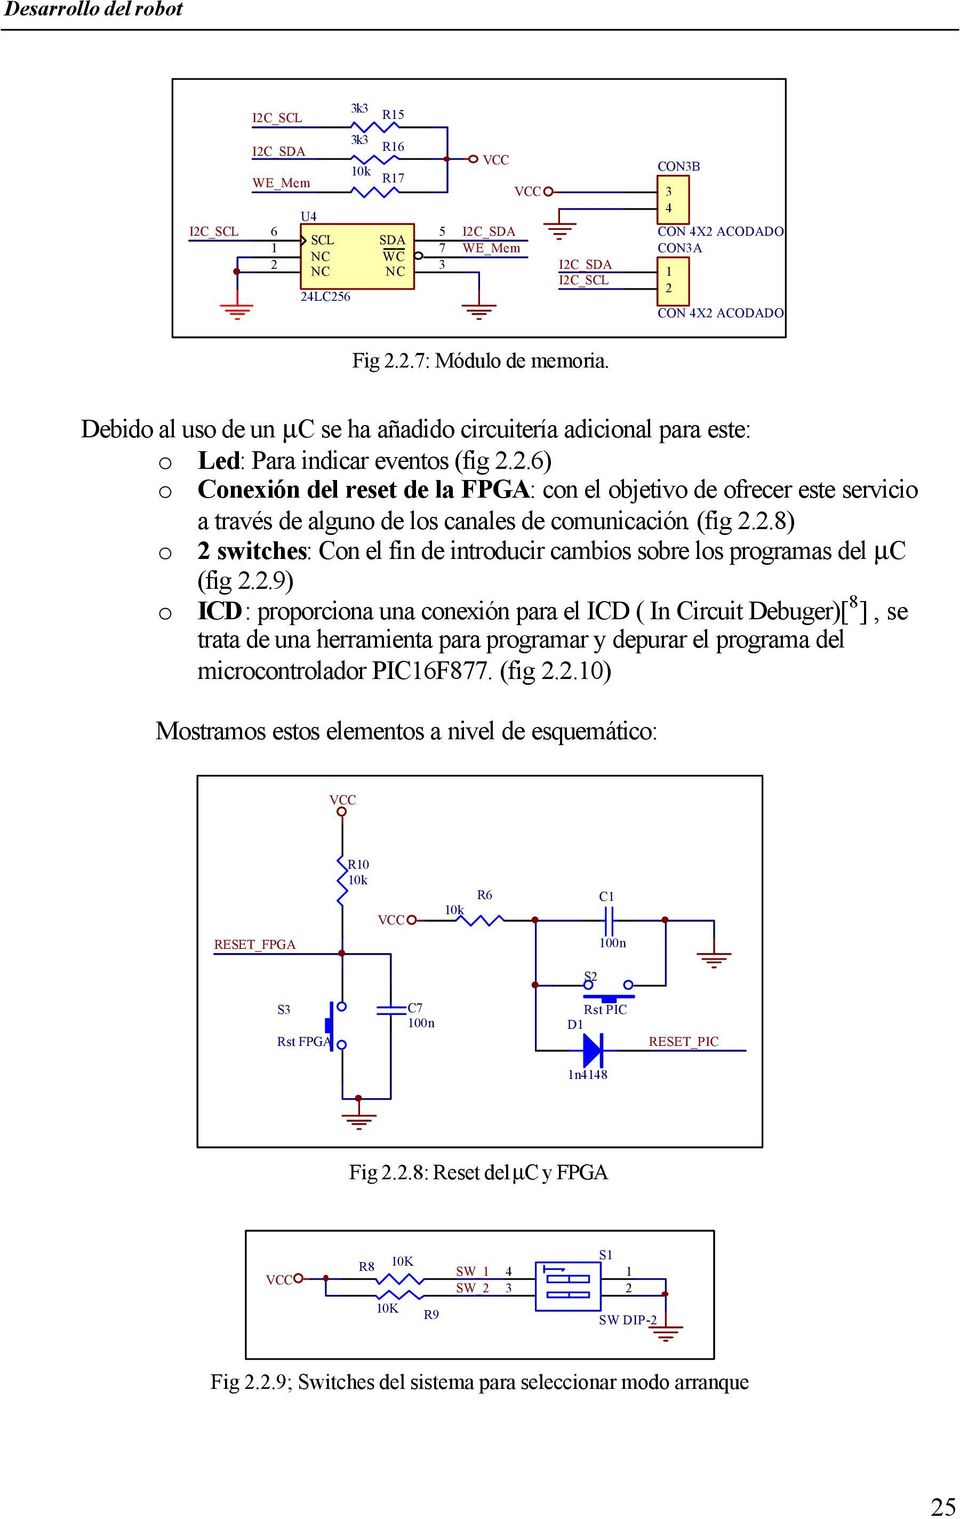 .6) o Conexión del reset de la FPGA: con el objetivo de ofrecer este servicio a través de alguno de los canales de comunicación. (fig.